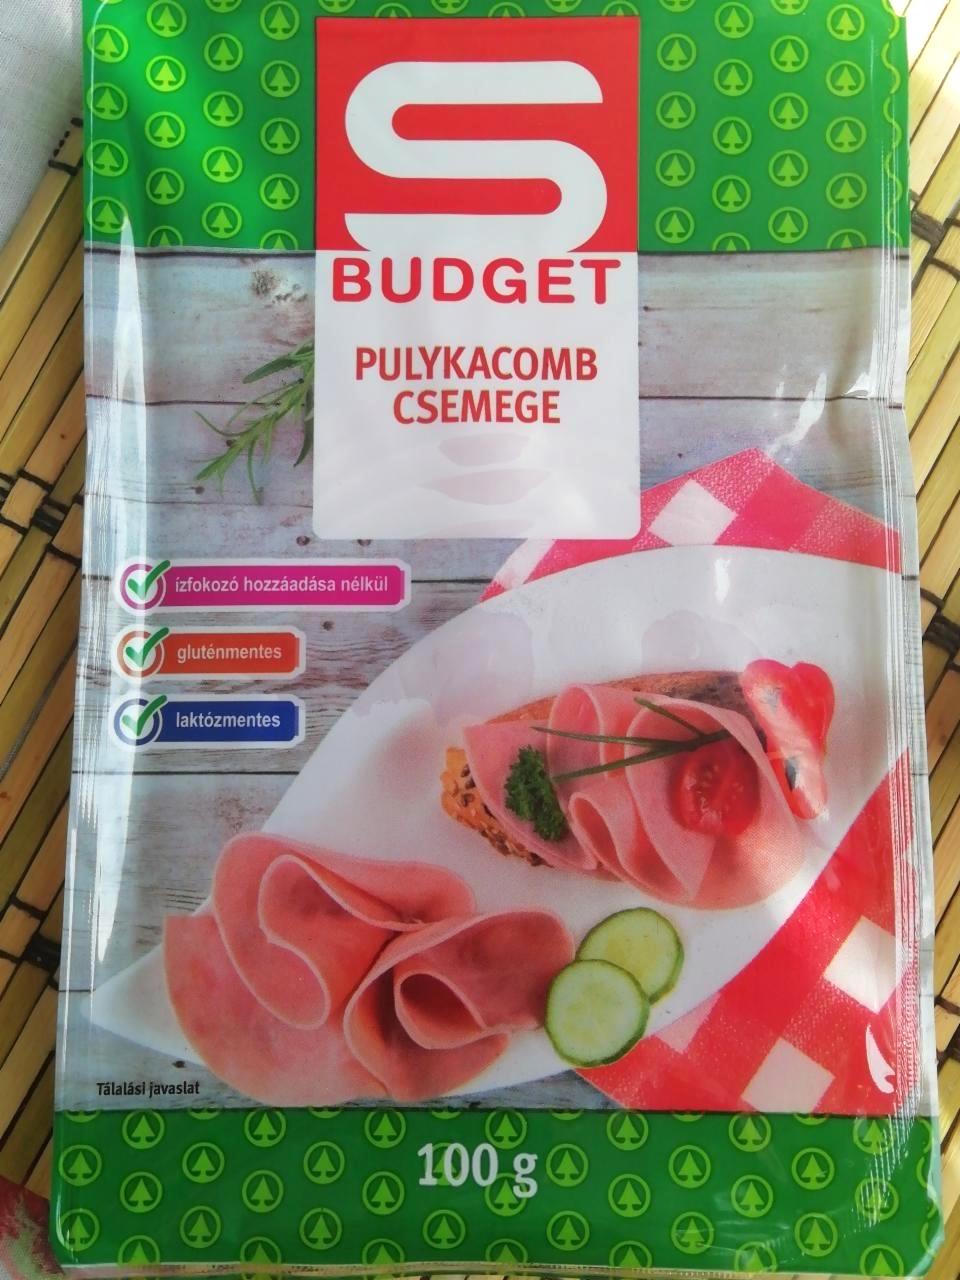 Képek - Pulykacomb csemege S Budget